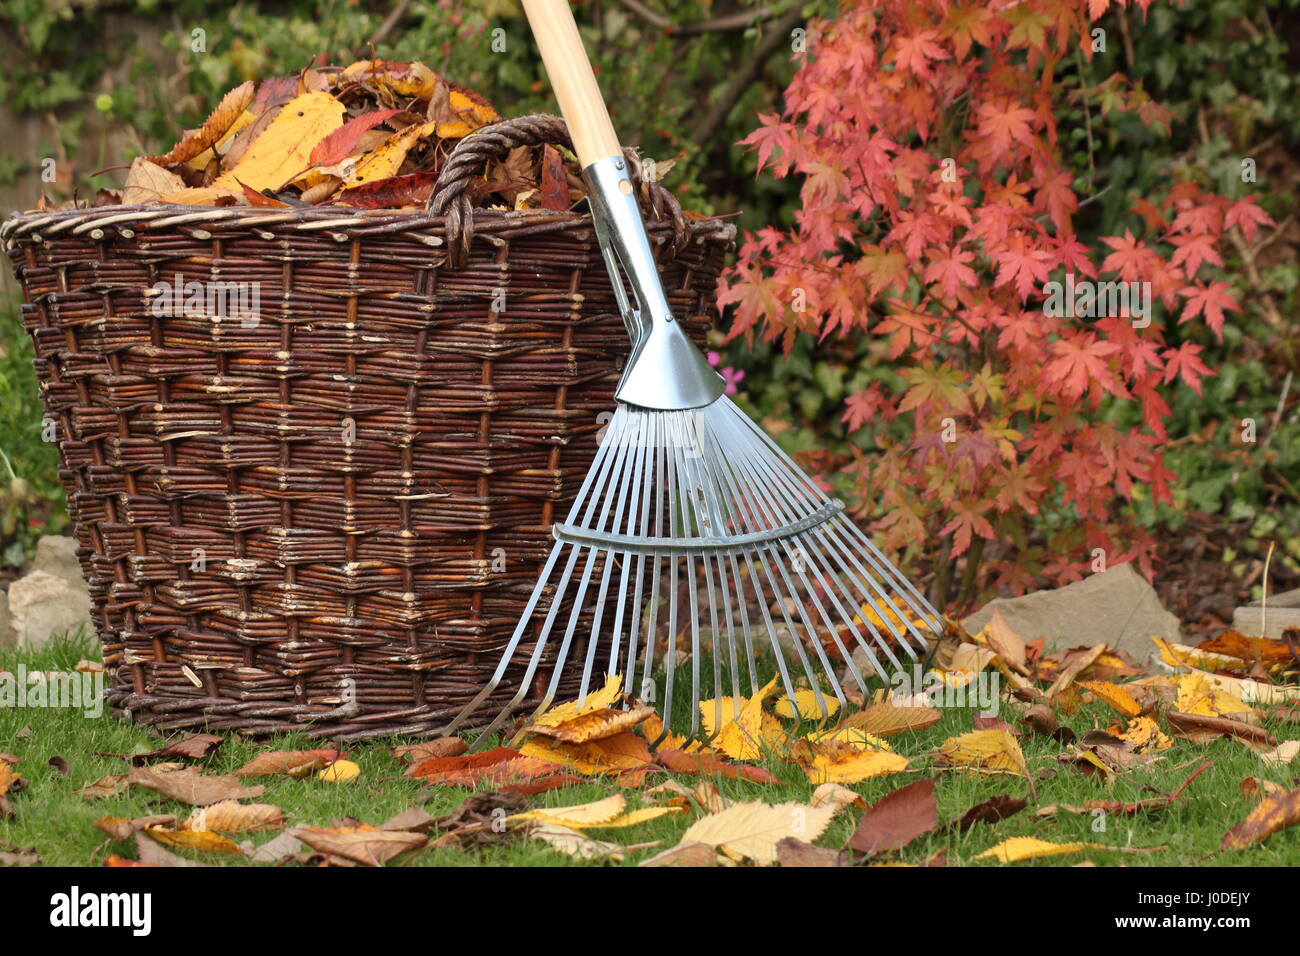 Foglie cadute sgomberate da un prato giardino in un cesto di tessuto in un luminoso giorno d'autunno, Regno Unito Foto Stock